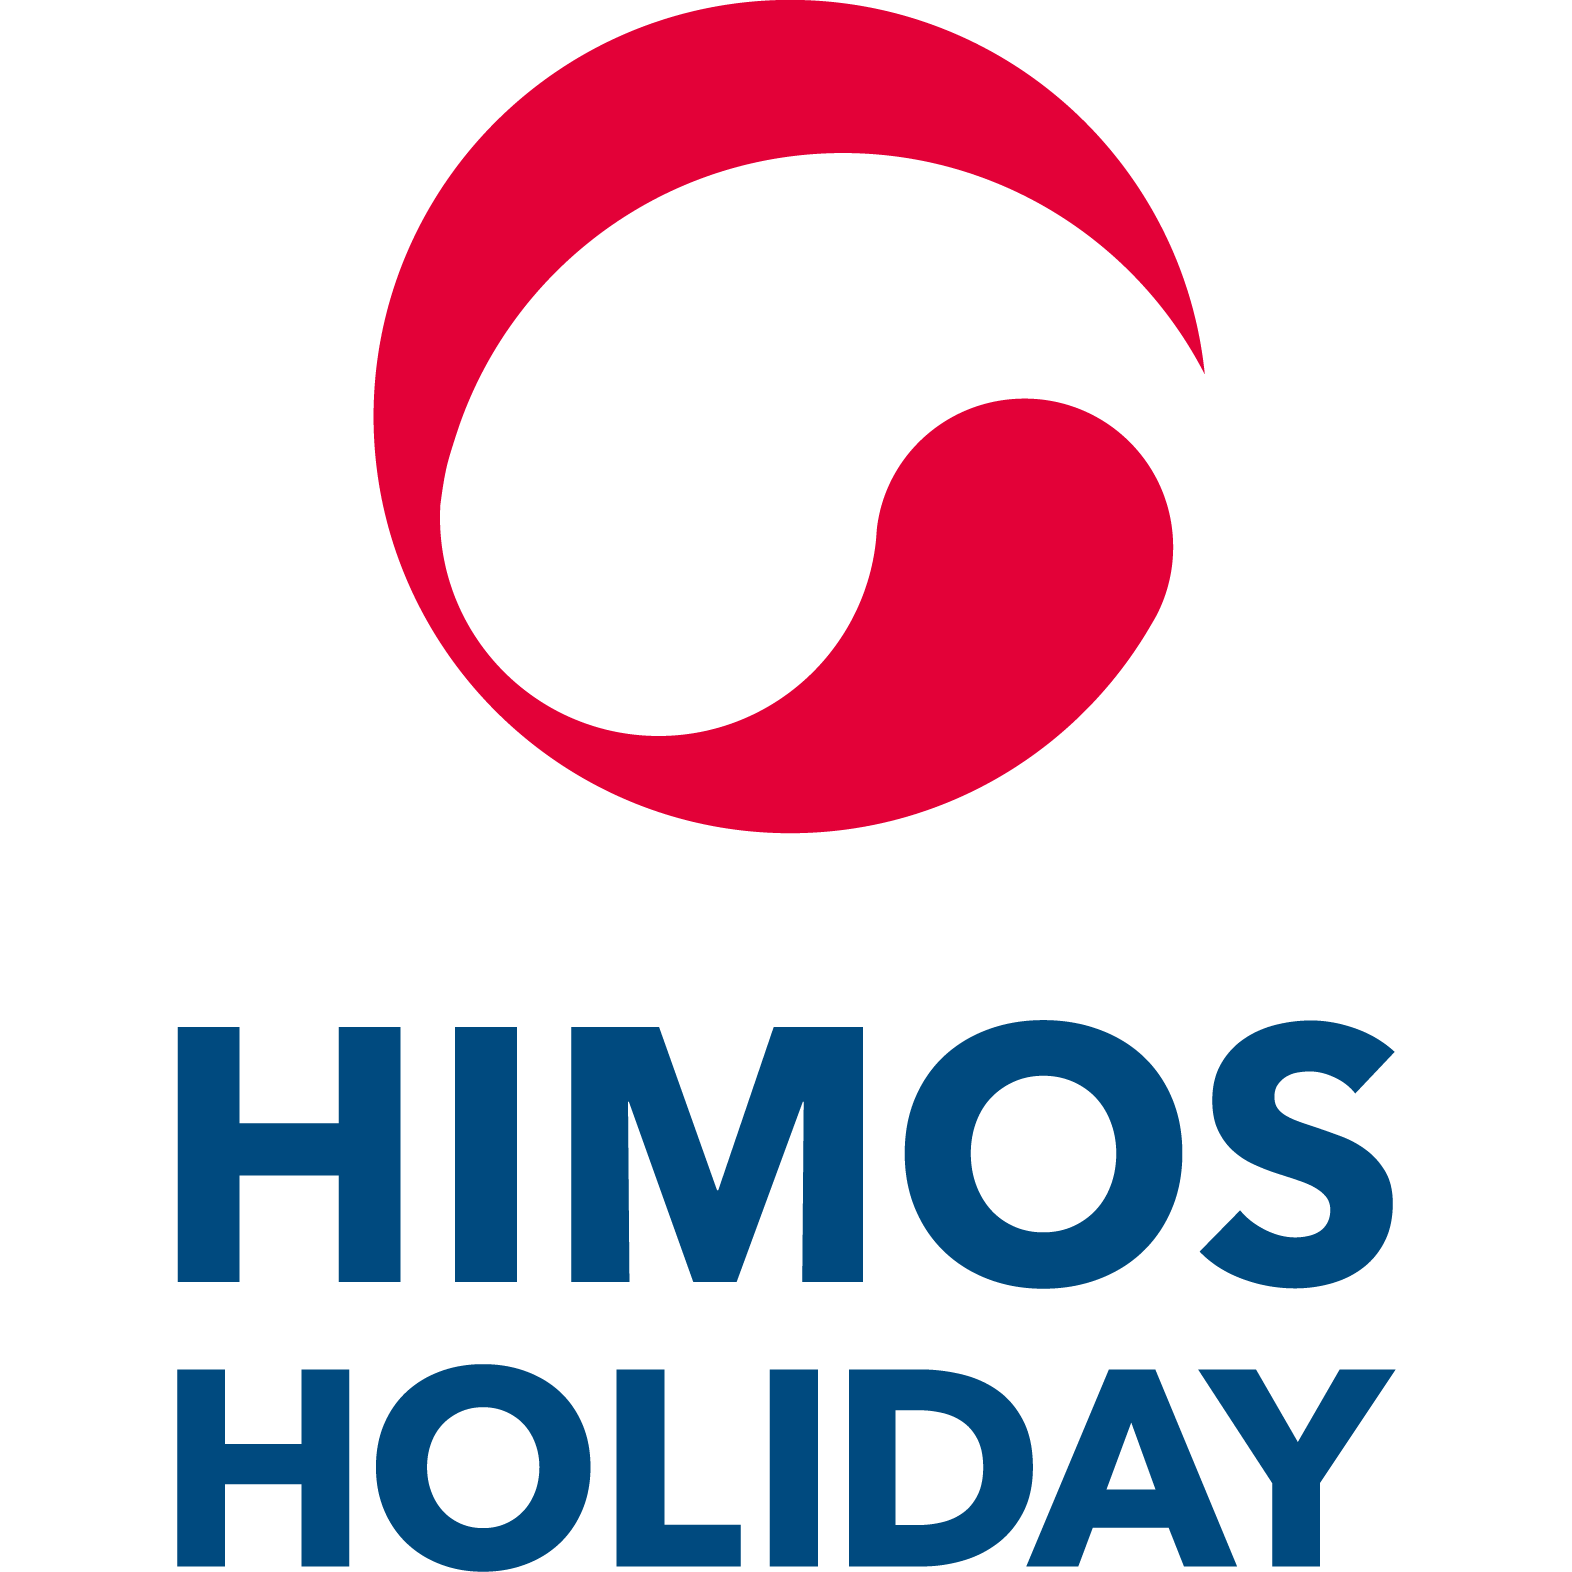 Himos Holiday